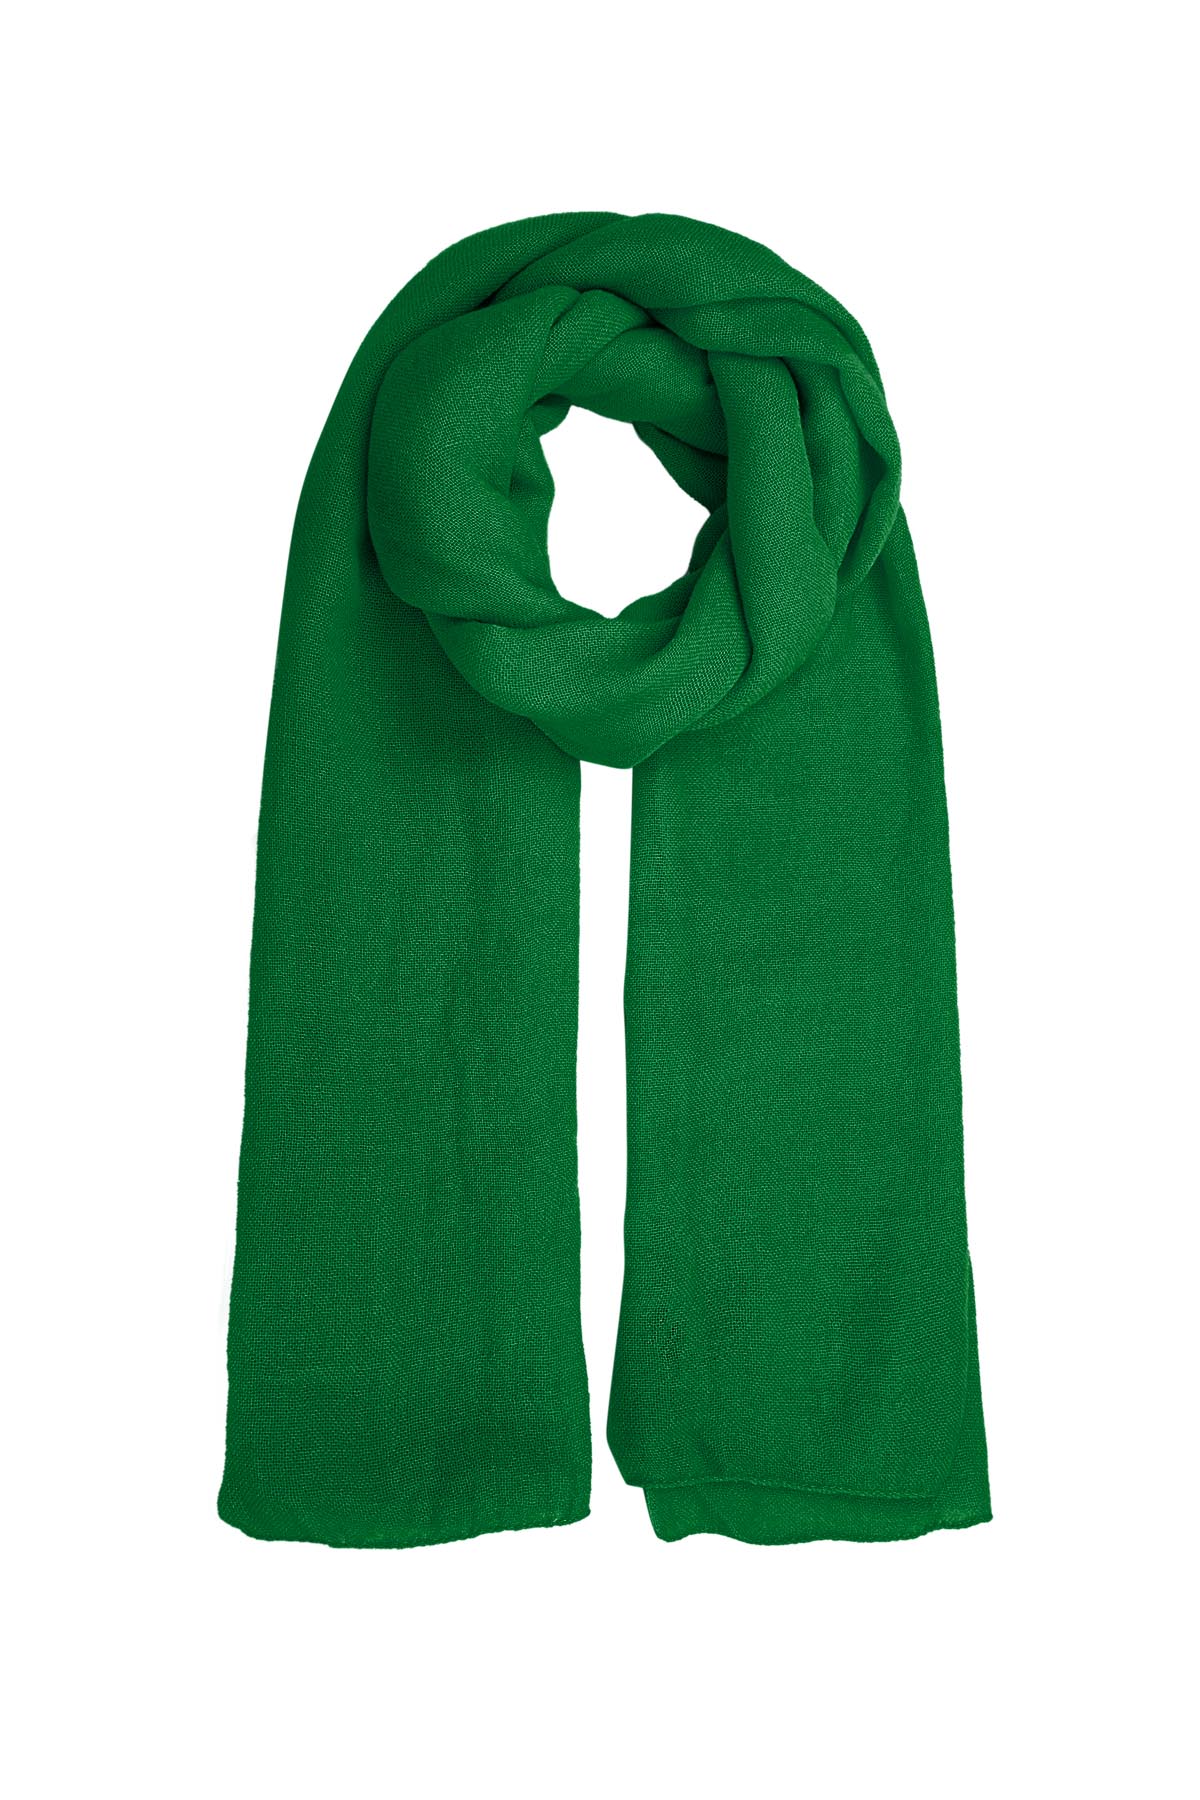 Sjaal effen kleur - pauw groen h5 